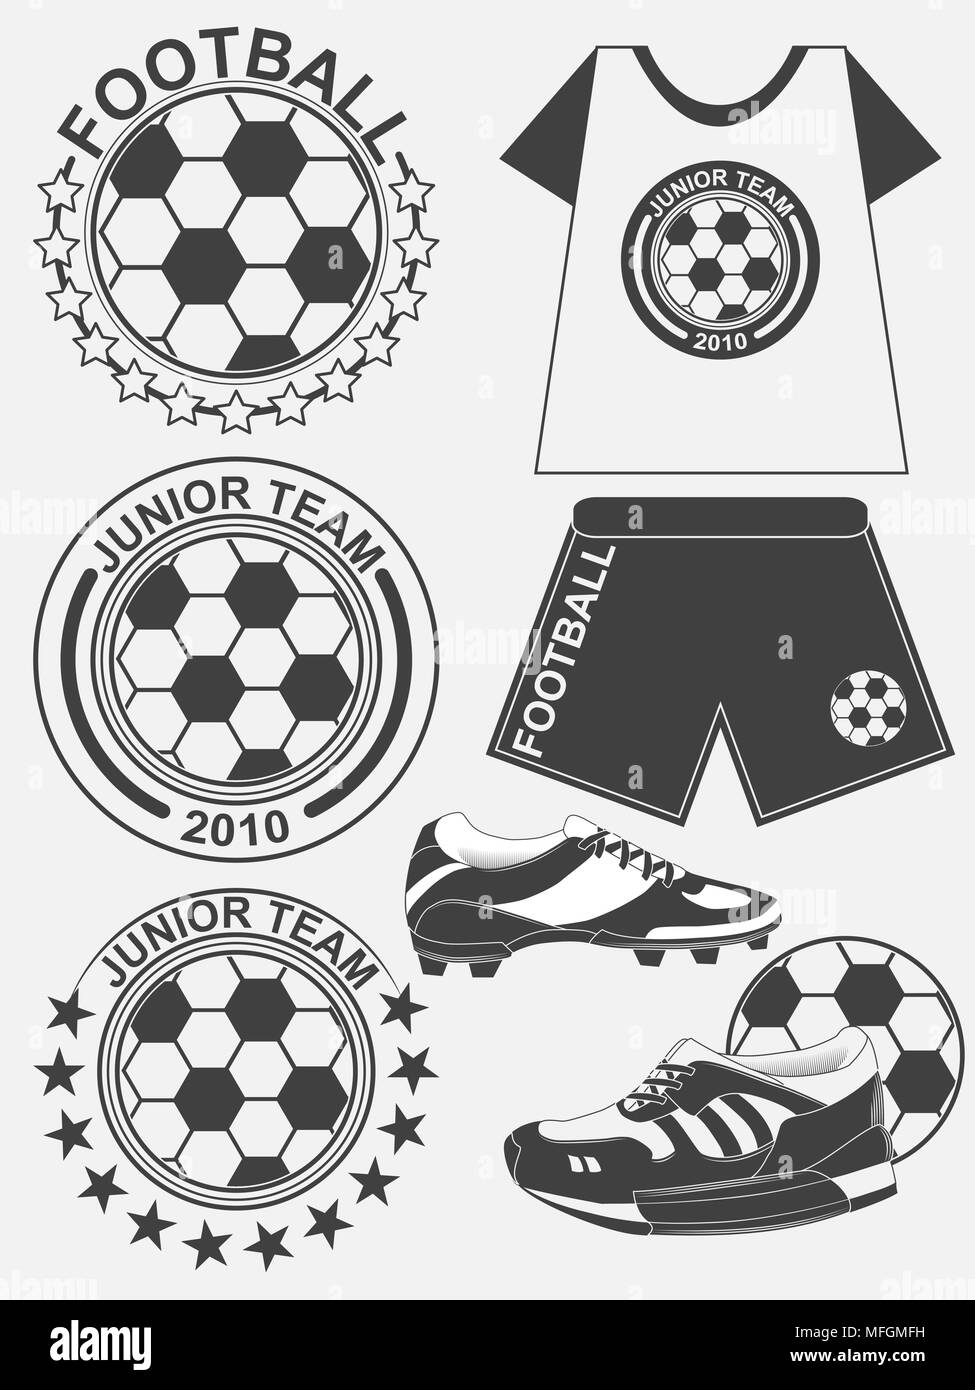 Club Always Ready  Club, Football logo, Sports logo